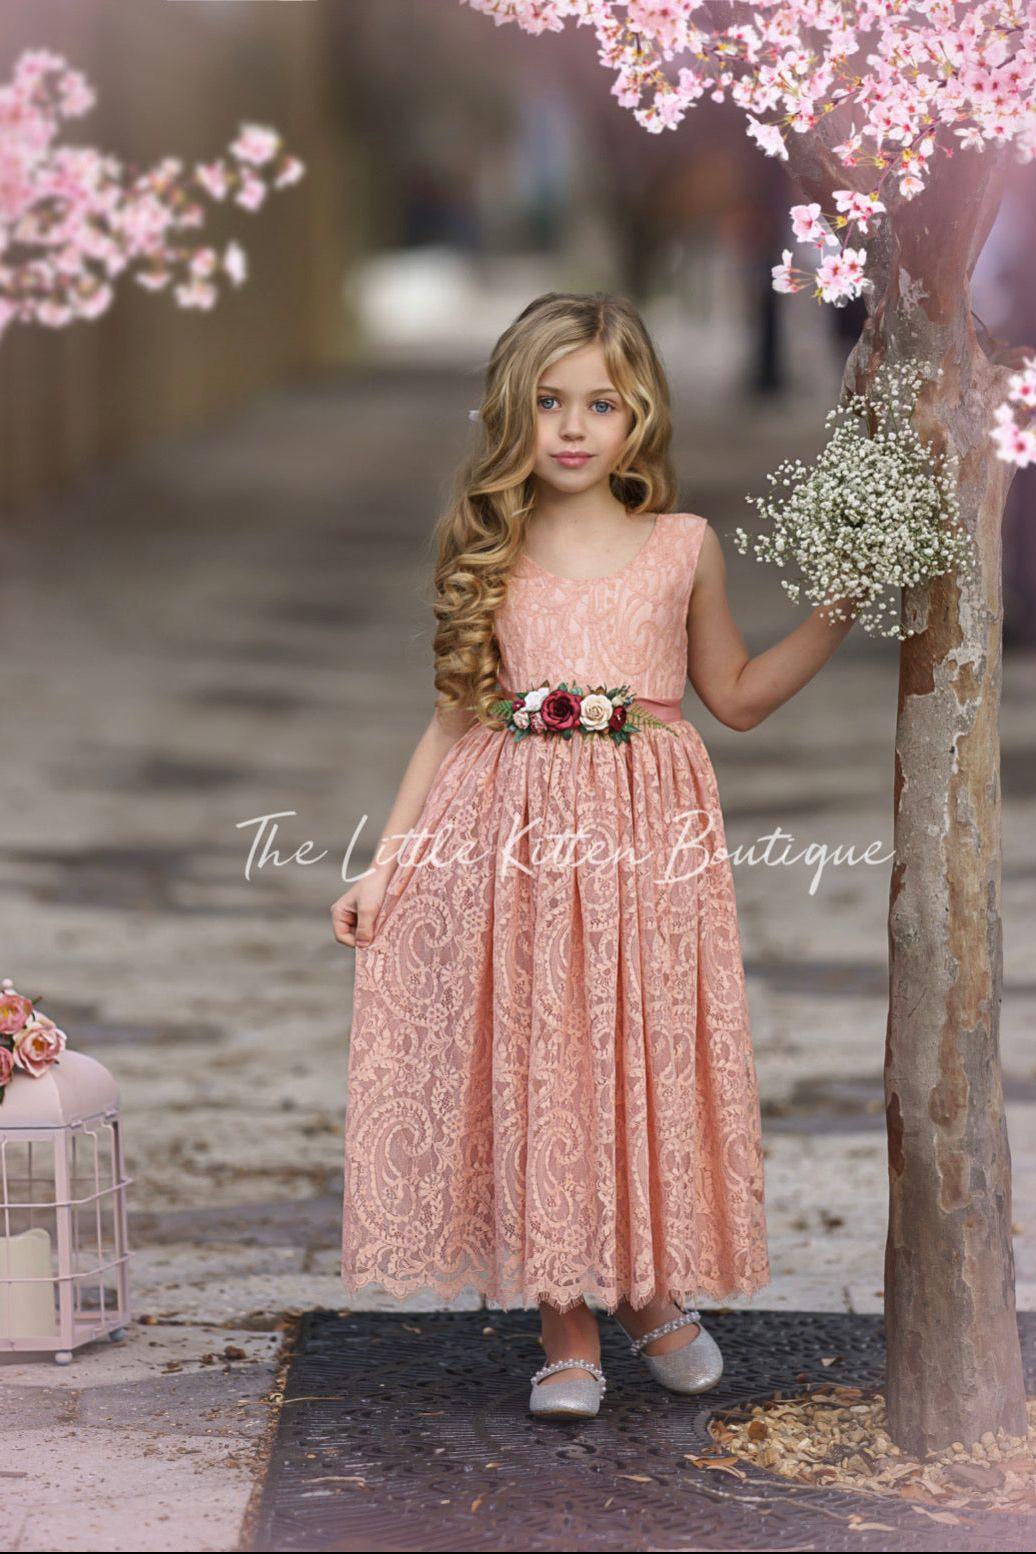 Sleeveless Ankle-Length Lace Flower Girl Dress - Rose, White, Ivory - The Little Kitten Boutique